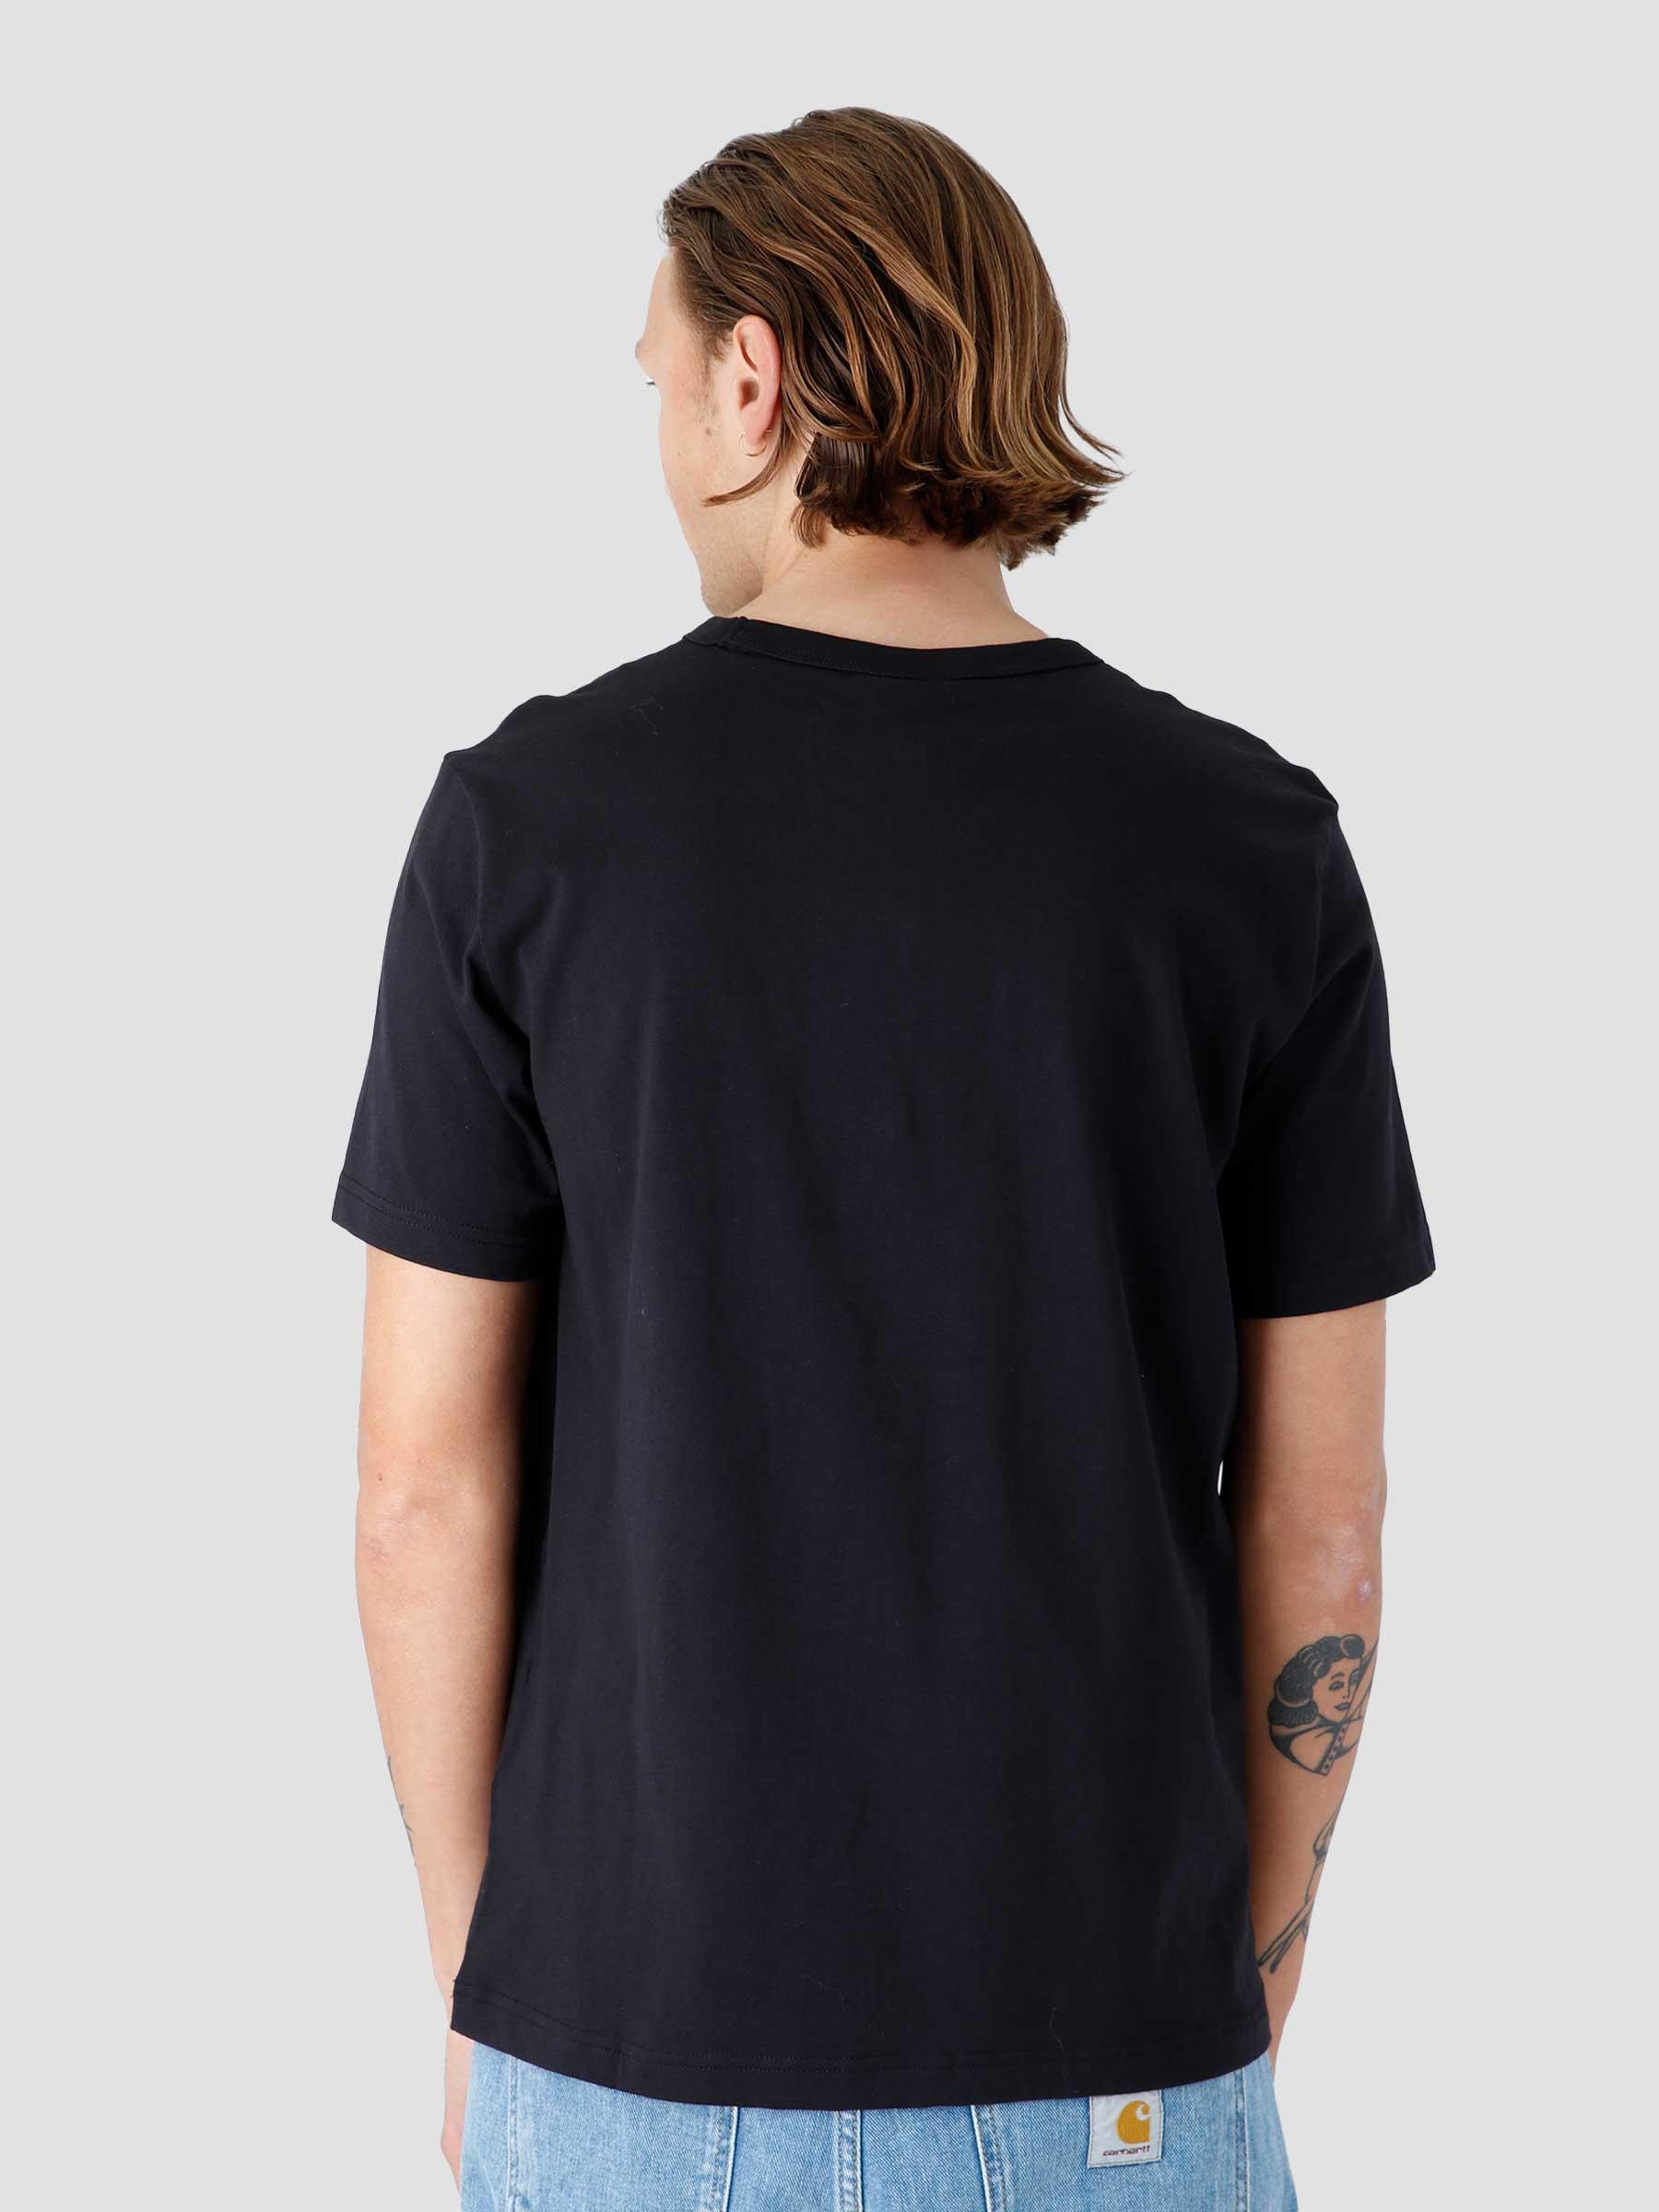 Crewneck T-Shirt Black Beauty 216545-KK001